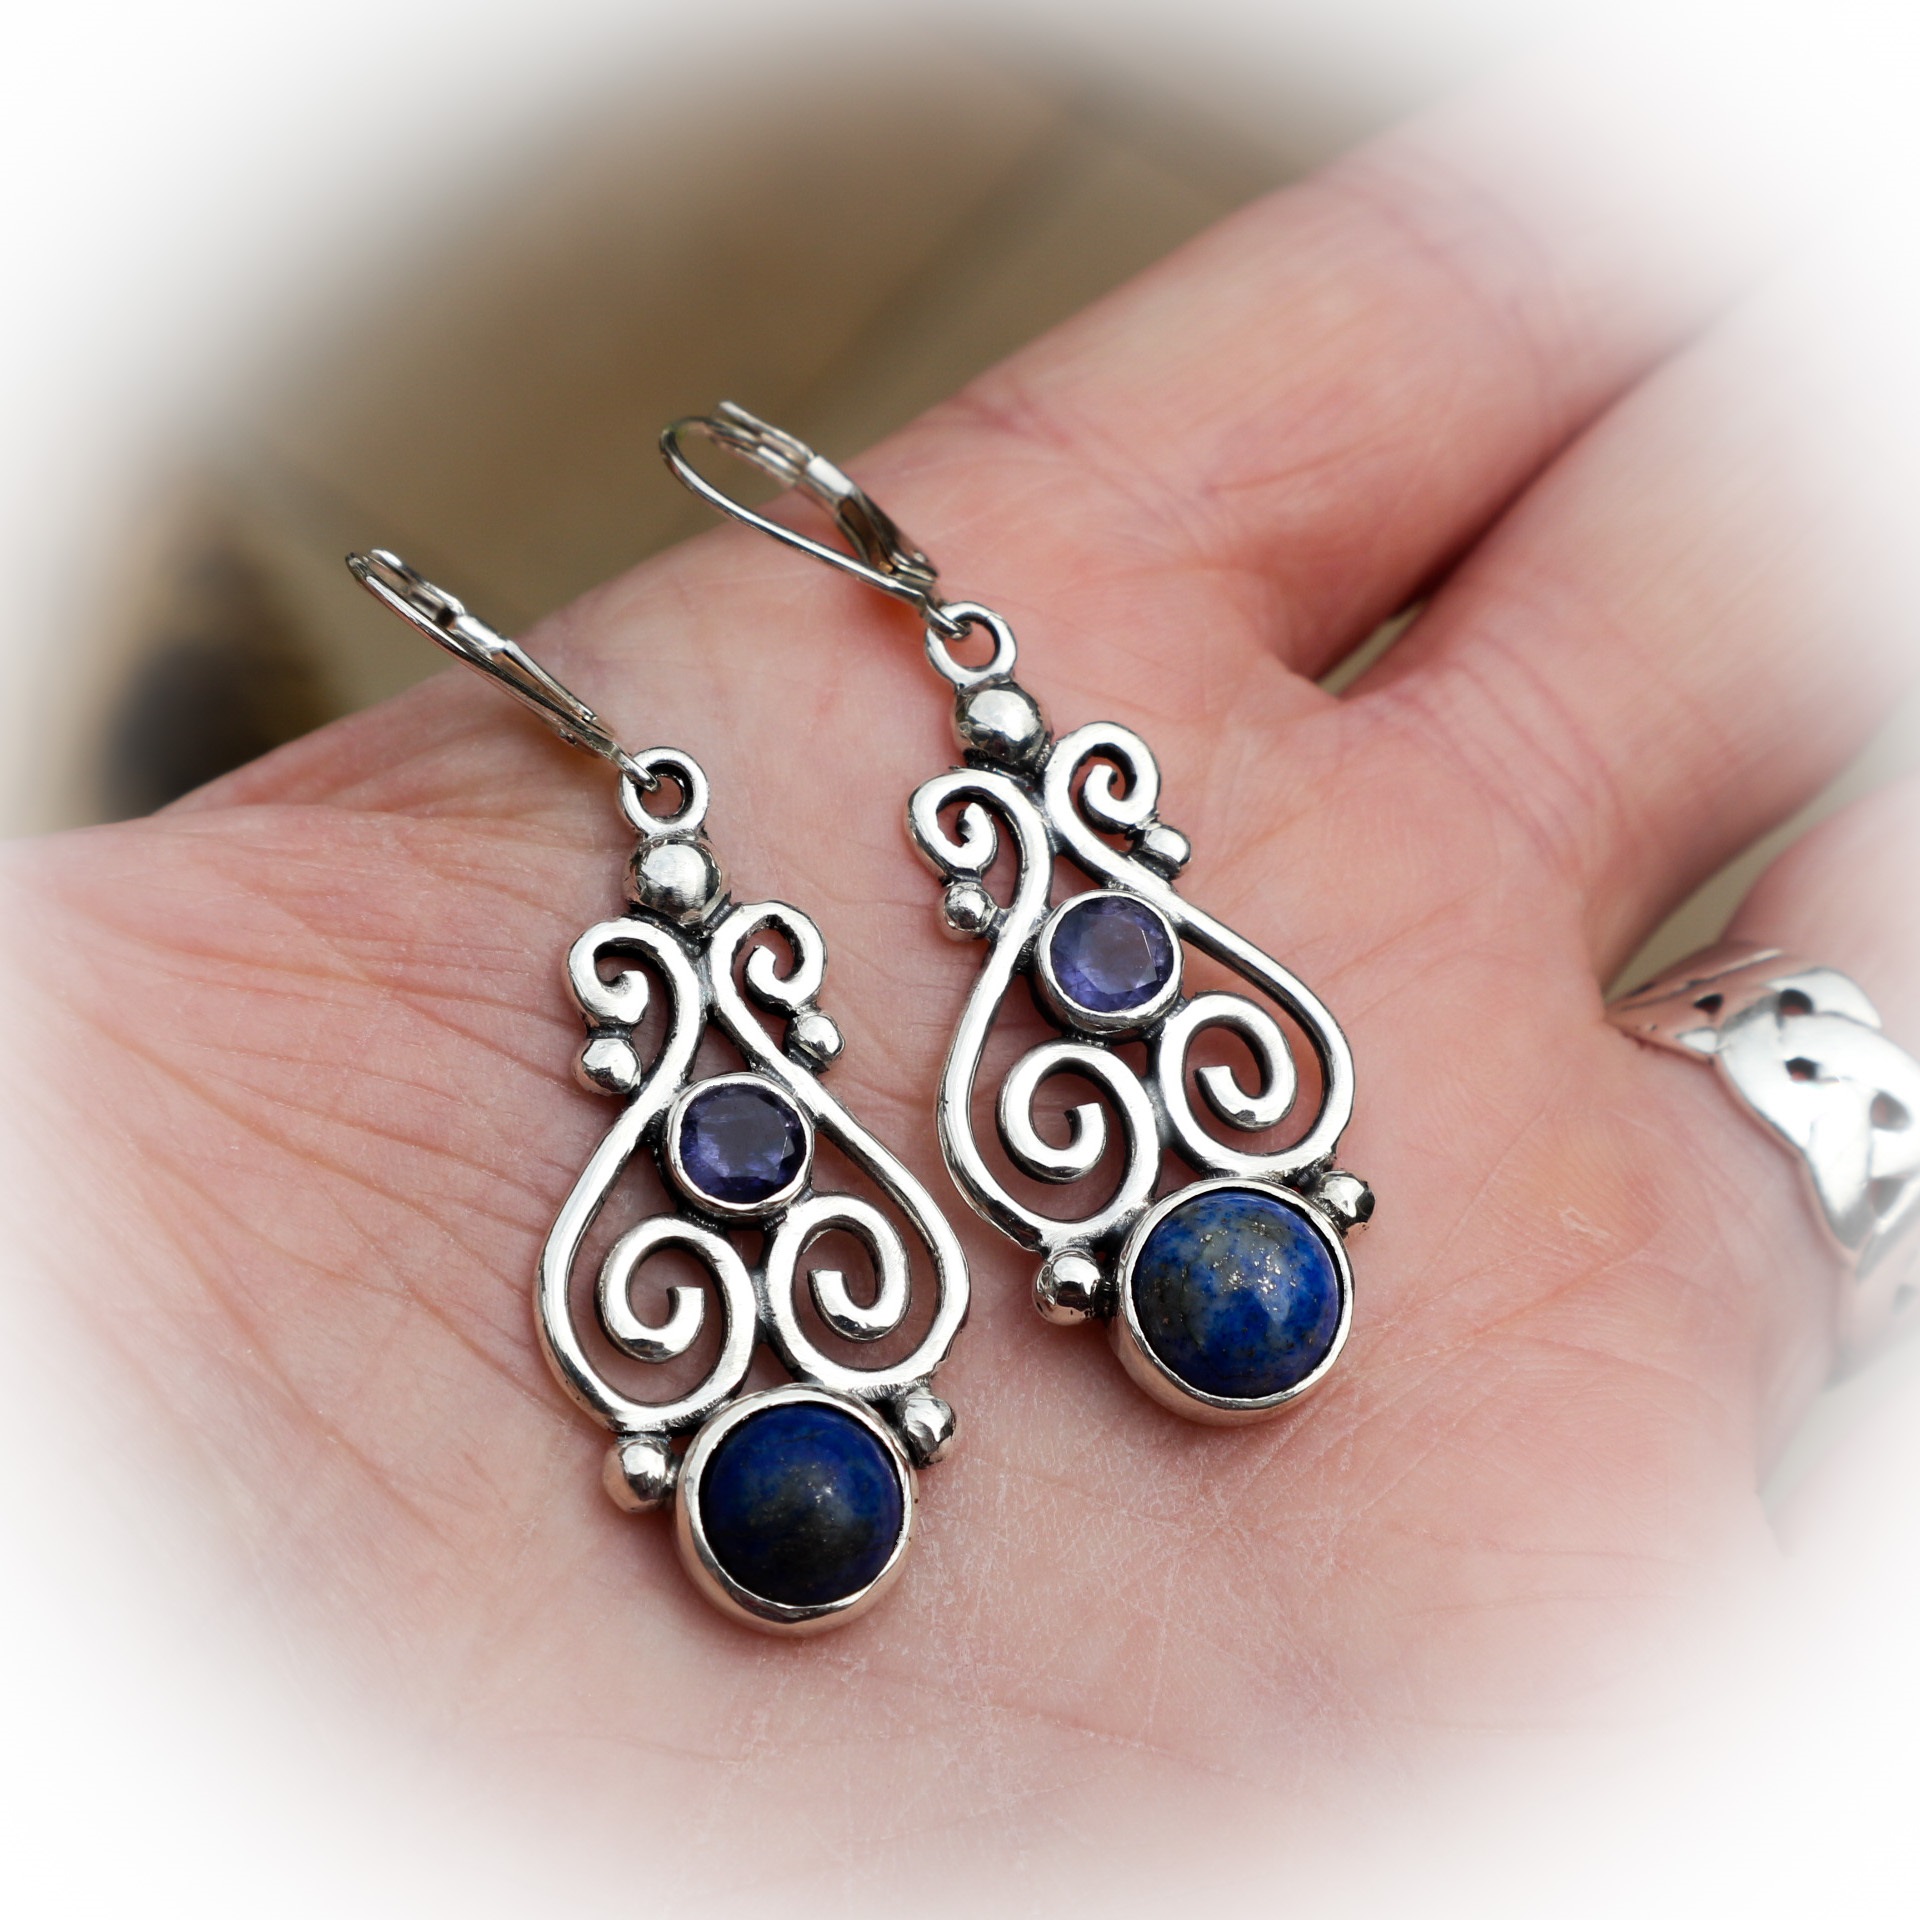 Een paar zilveren in een barokke stijl met blauwe stenen - Scarabee sieraden